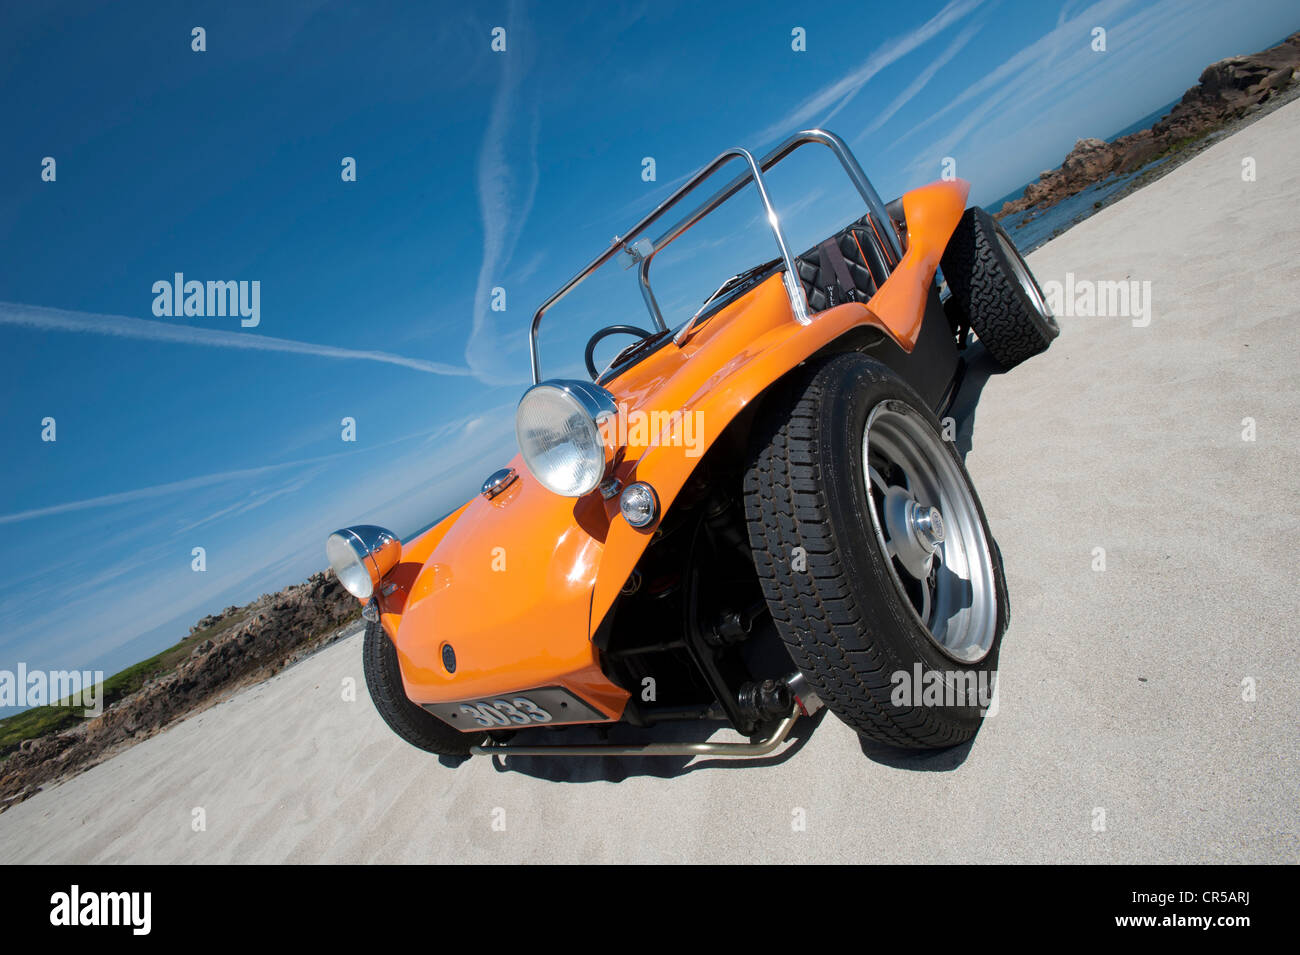 VW beach buggy on a sandy beach under a blue sky Stock Photo